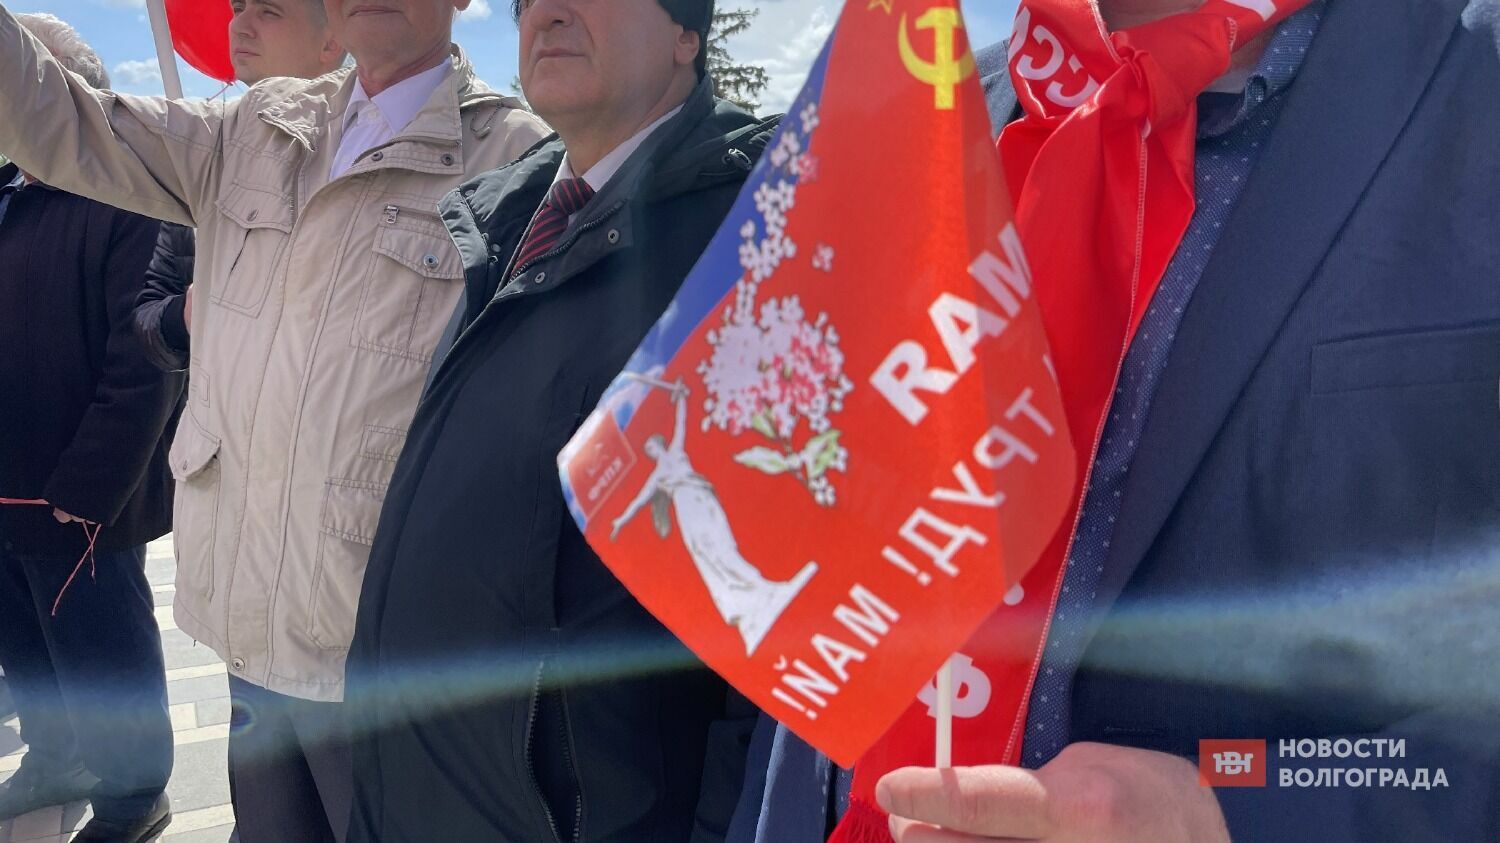 Сталинградский обком КПРФ провел митинг-концерт 1 мая на площади Металлургов в Волгограде.